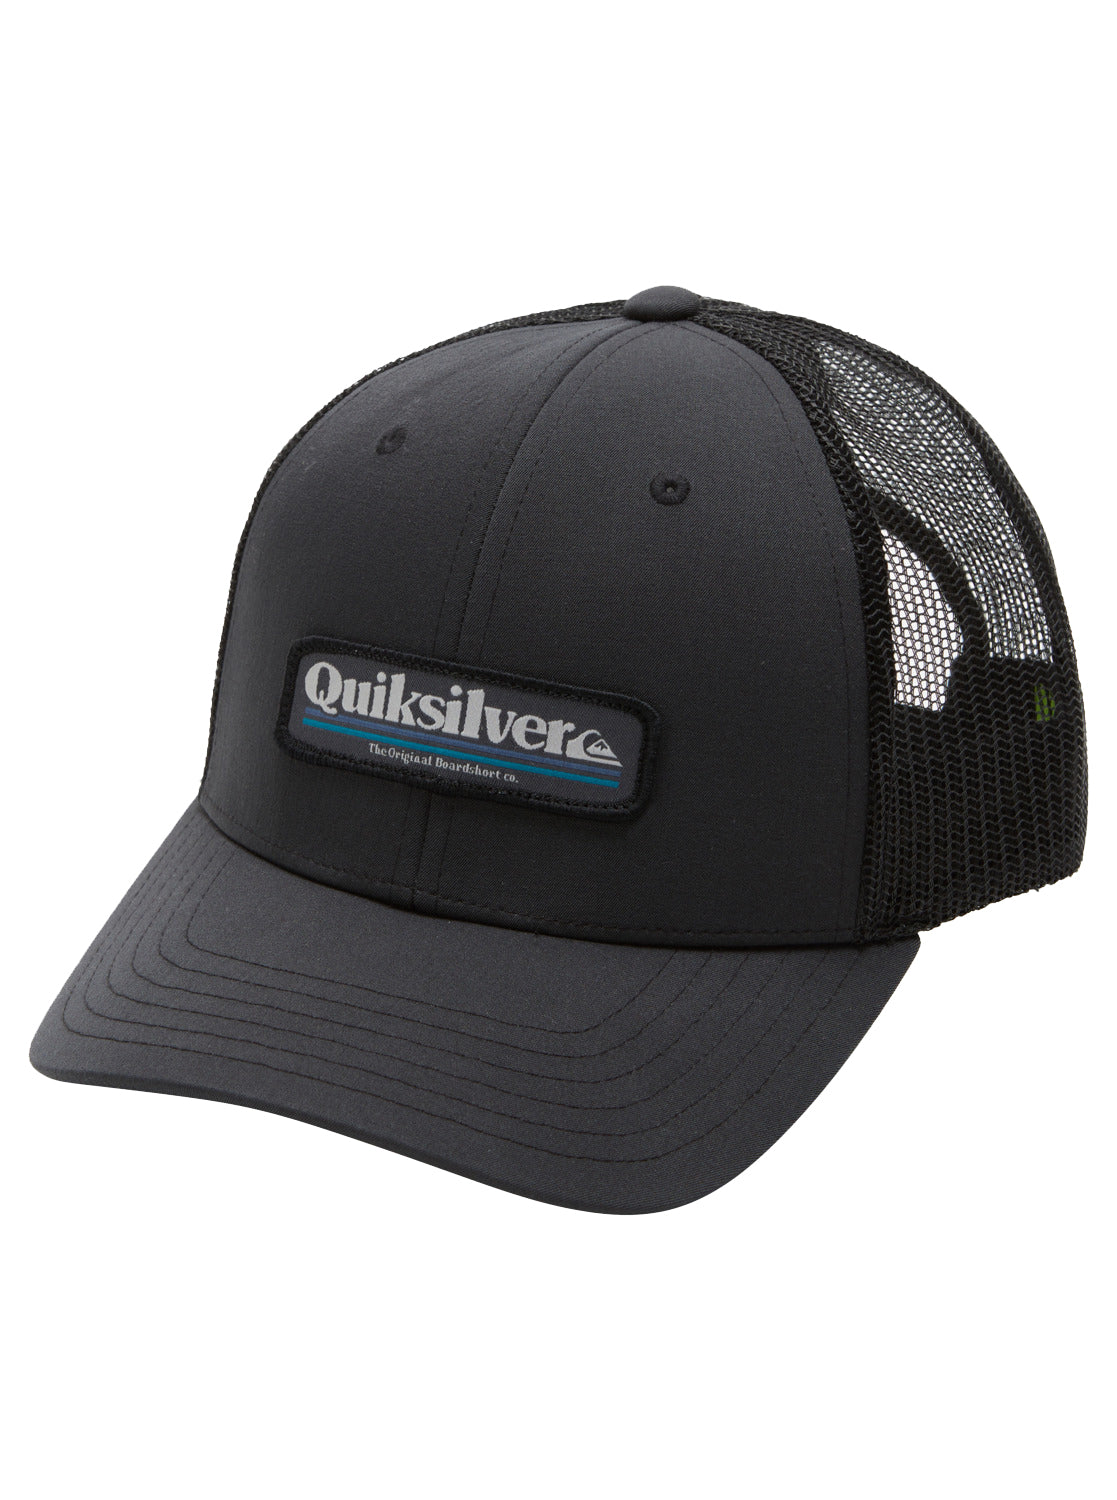 Quiksilver Stern catch Trucker Hat KVJ0 OS